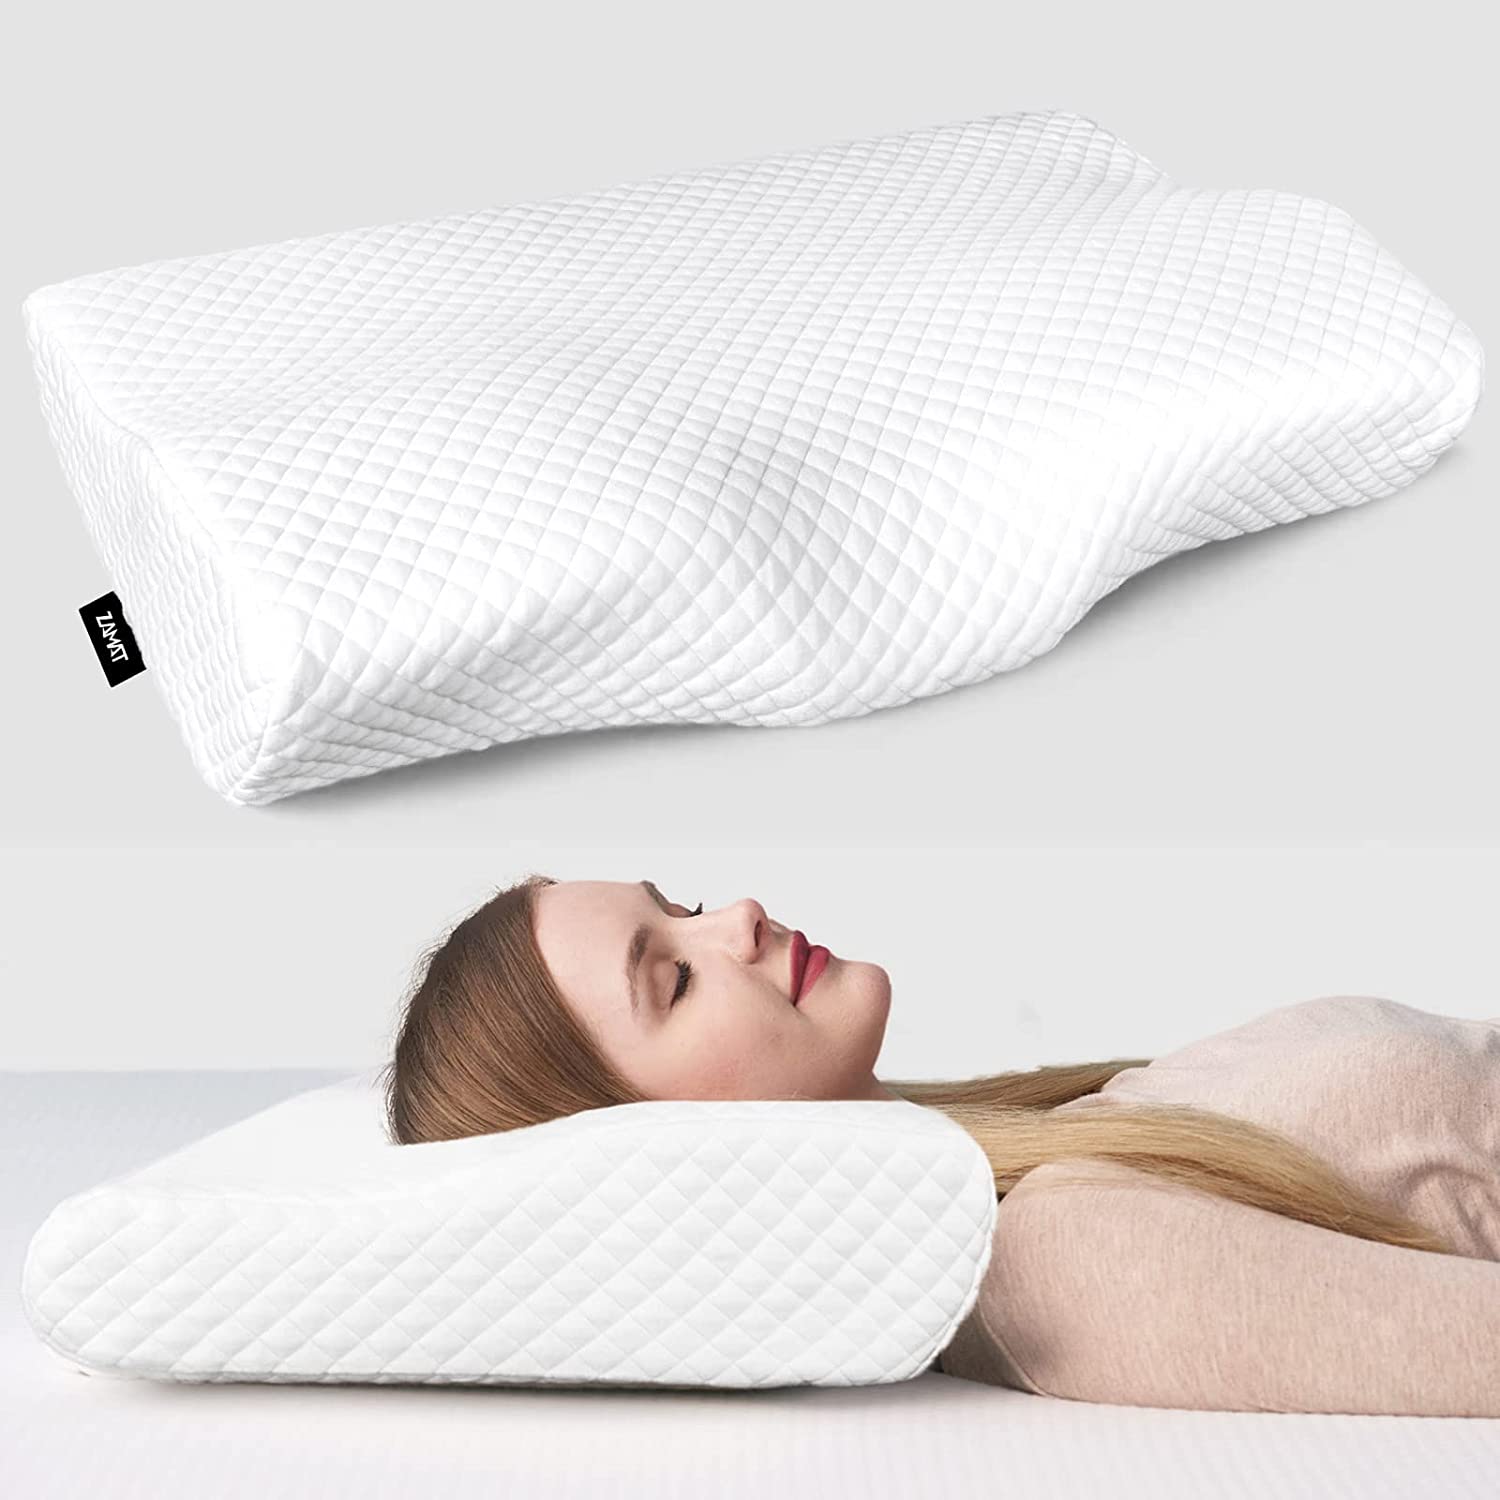 ZAMAT Contour Memory Foam Pillow for Neck Pain Relief, [...]